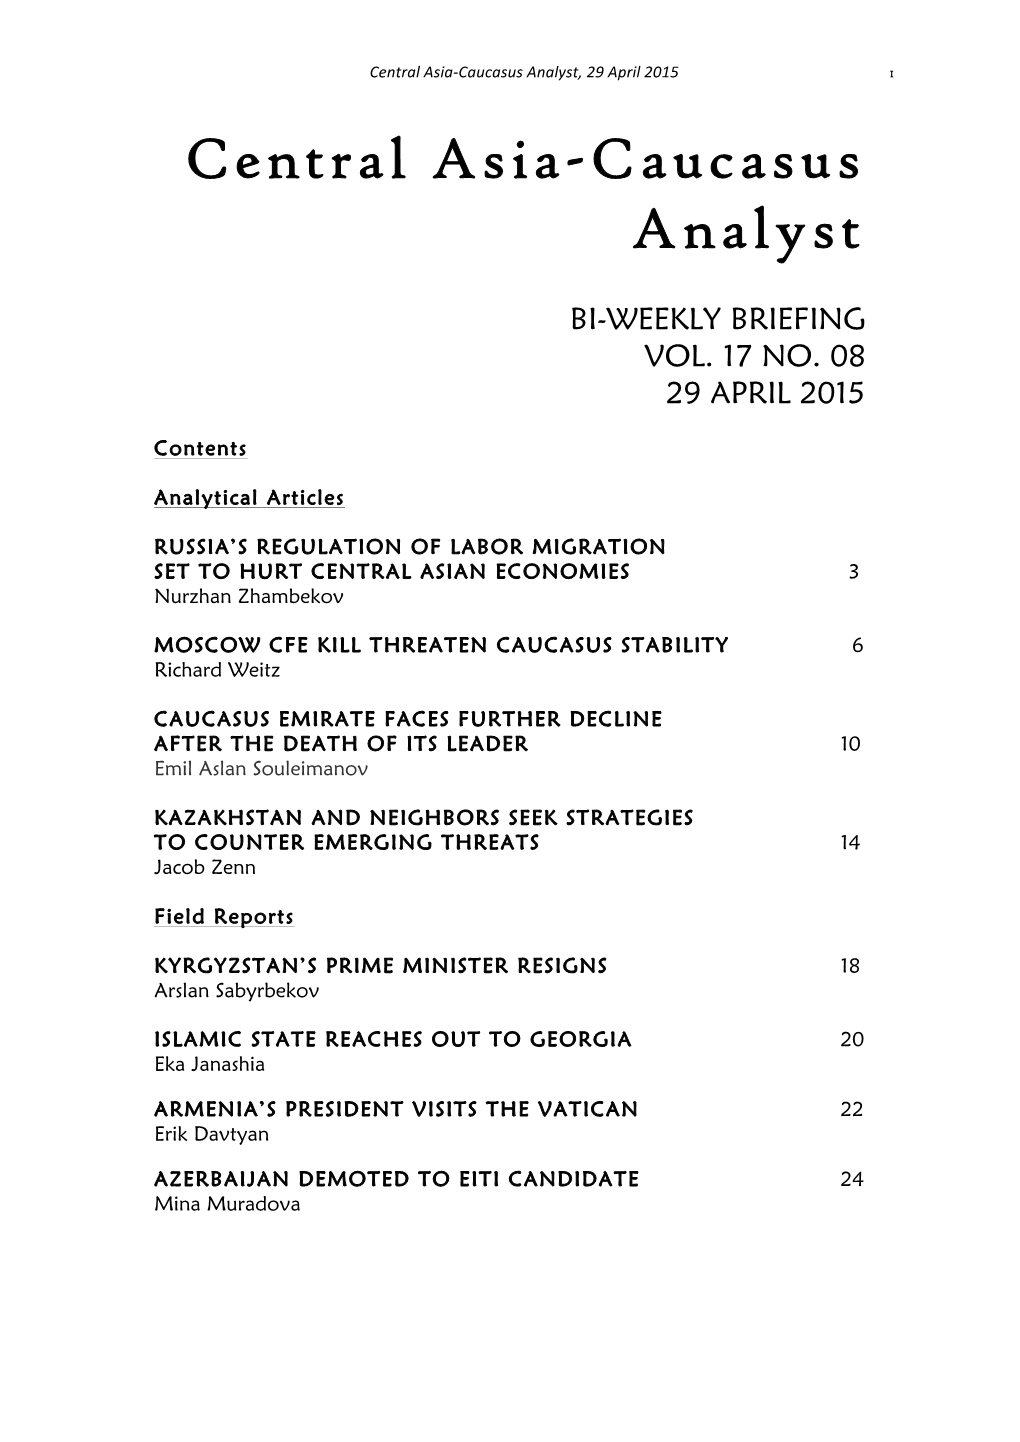 Central Asia-Caucasus Analyst, Vol 17, No 8